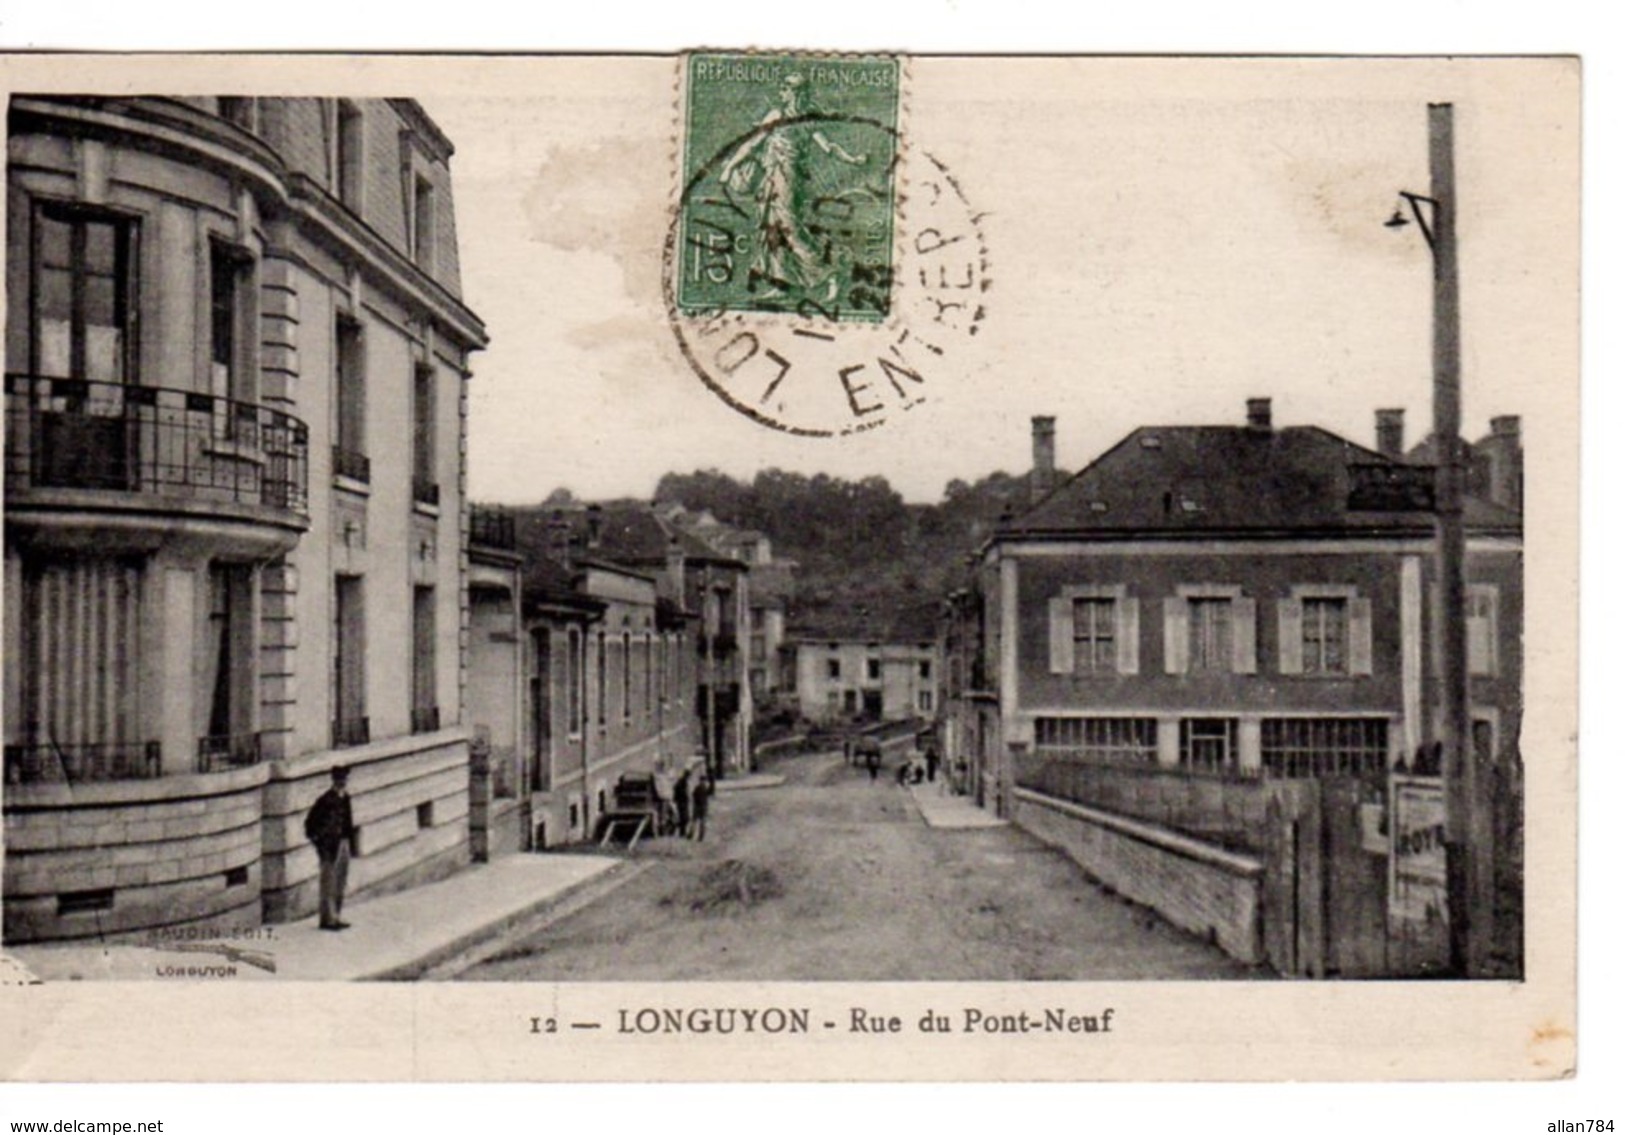 54 - CPA LONGUYON - RUE DU PONT NEUF - 1923 - CACHET PEU COMMUN ENTREPOT GARE DE LONGUYON - BON ETAT - - Longuyon